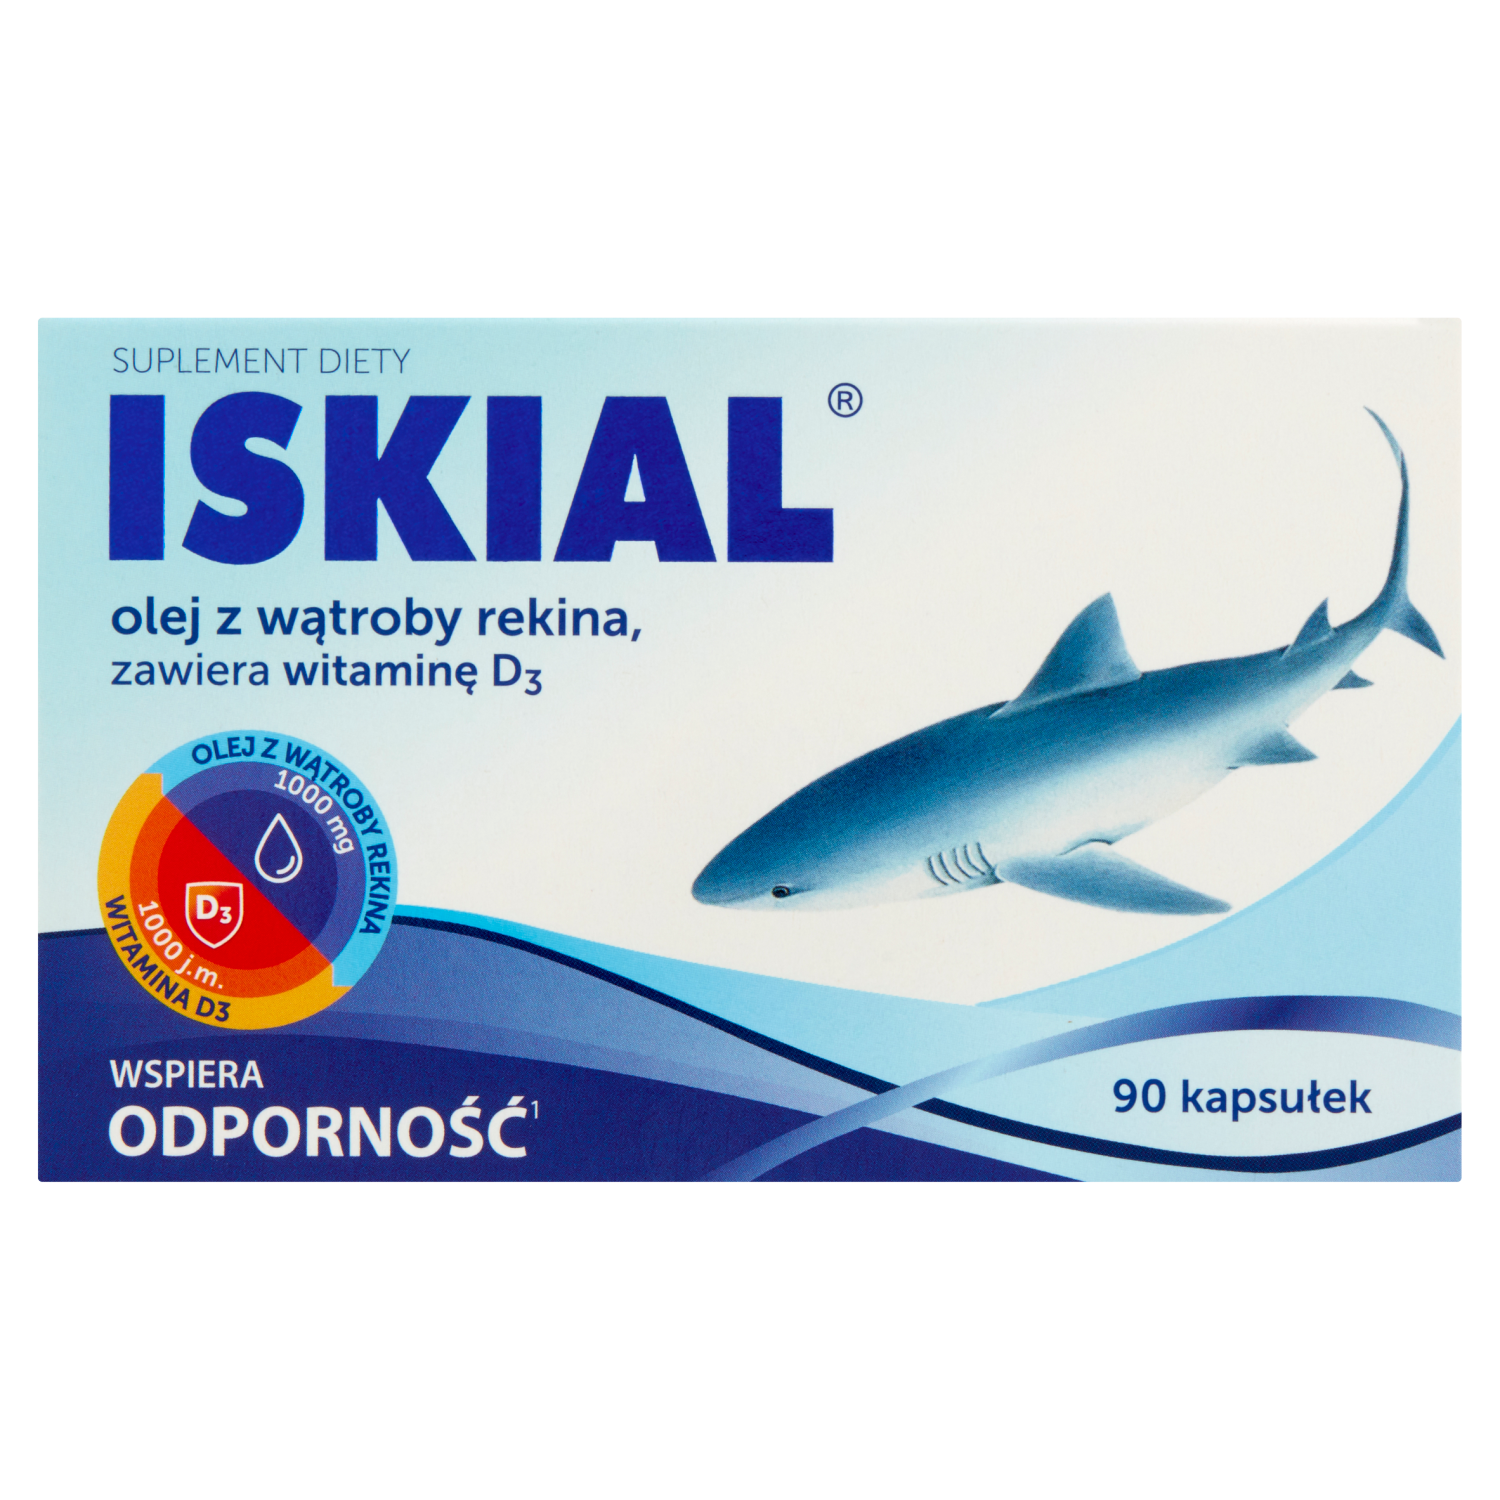 Iskial пищевая добавка, поддерживающая иммунитет, 90 кап./1 уп. фотографии